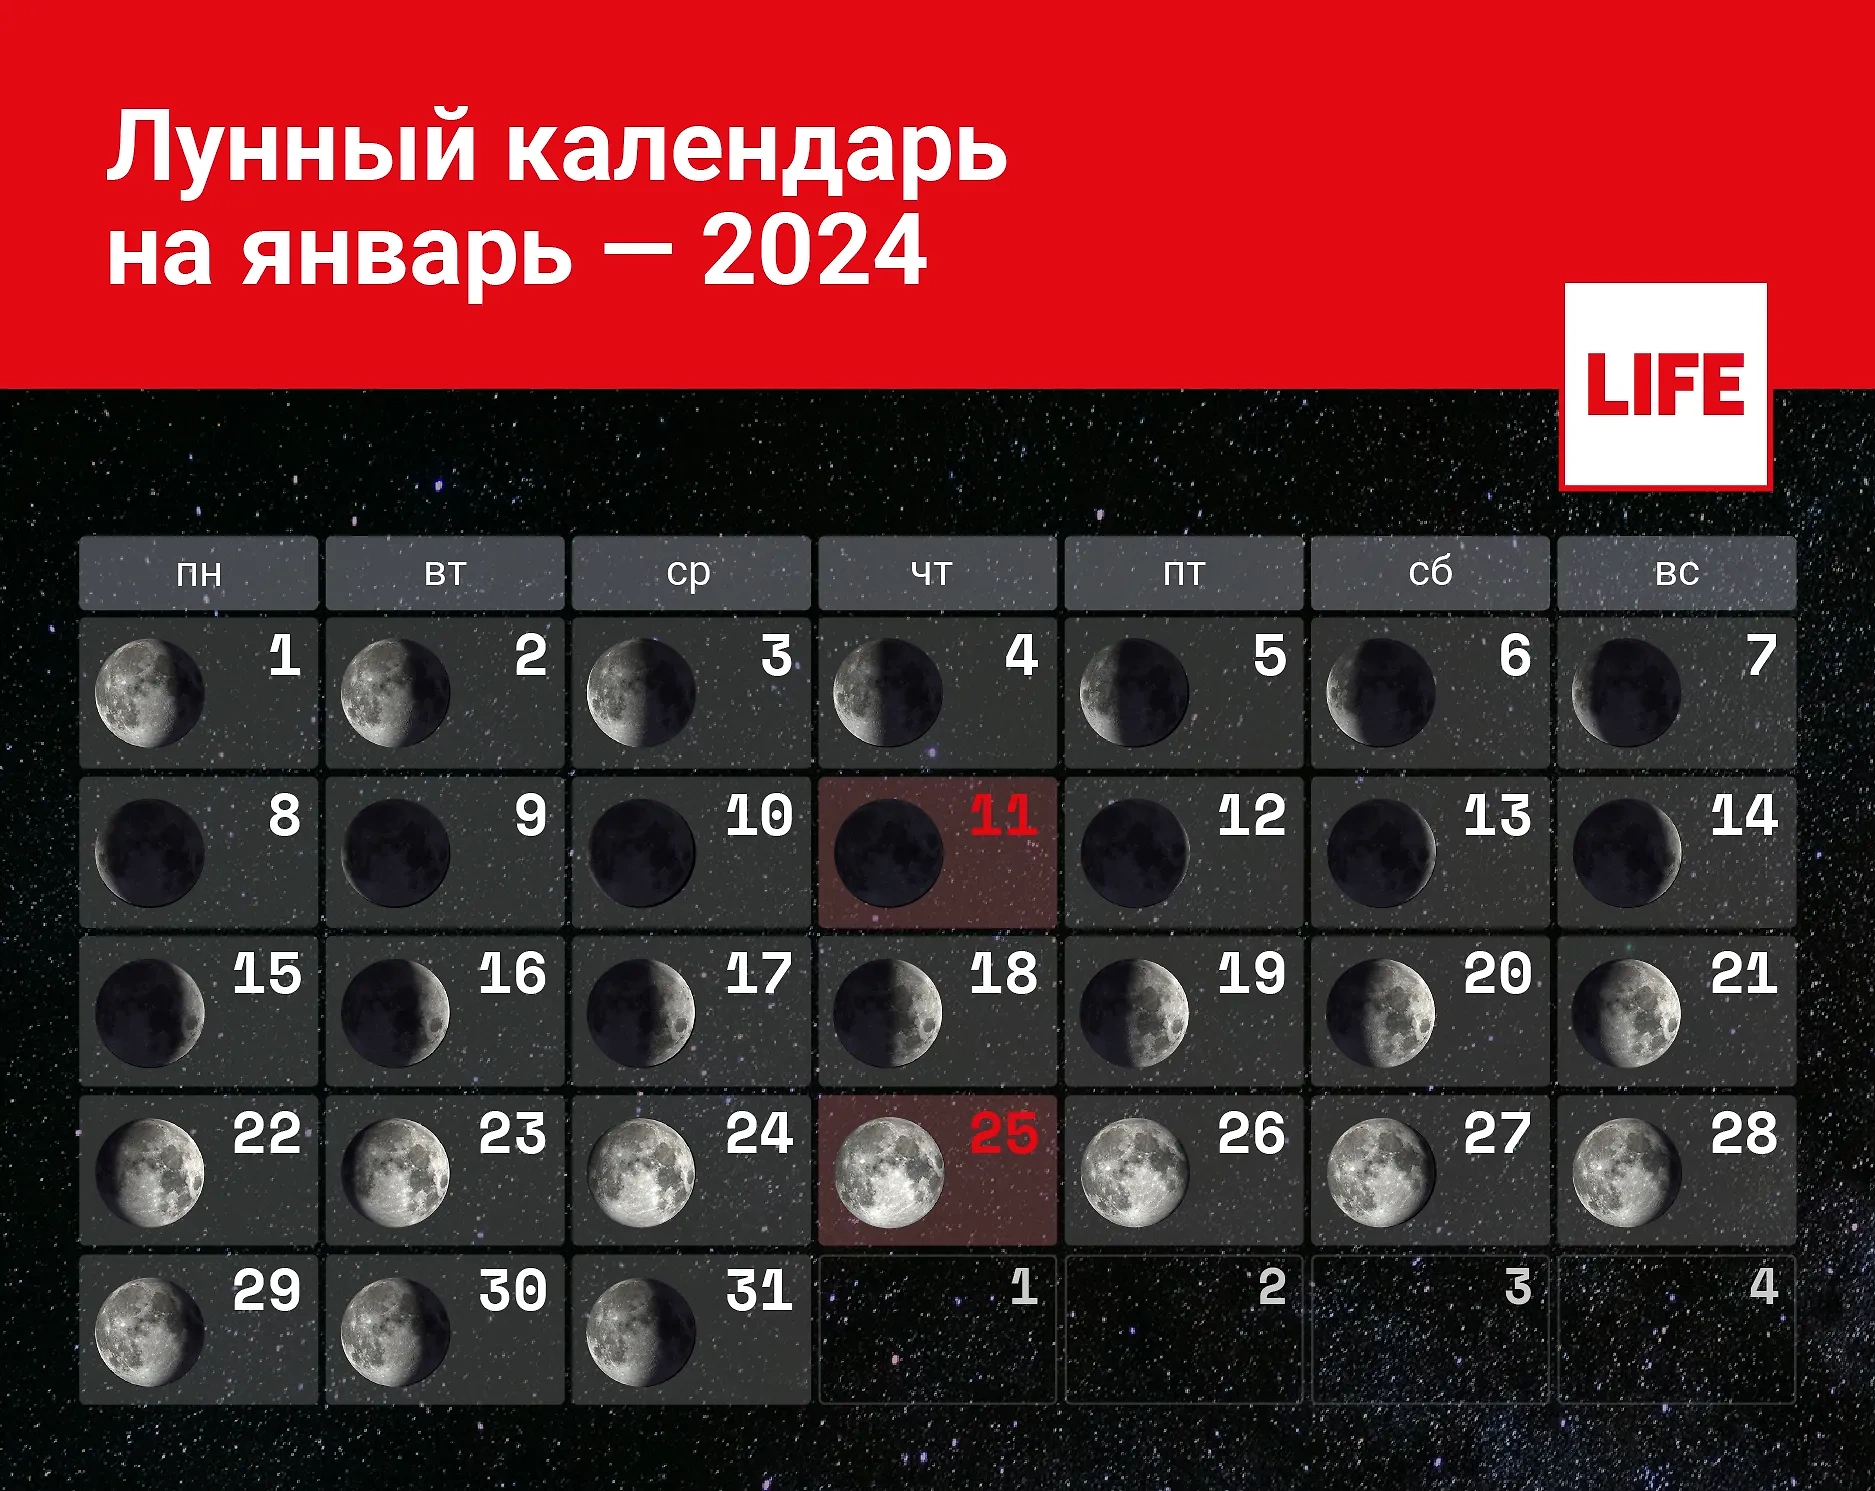 Газета «Знамя труда» публикует лунный календарь стрижек на январь 2024 года.